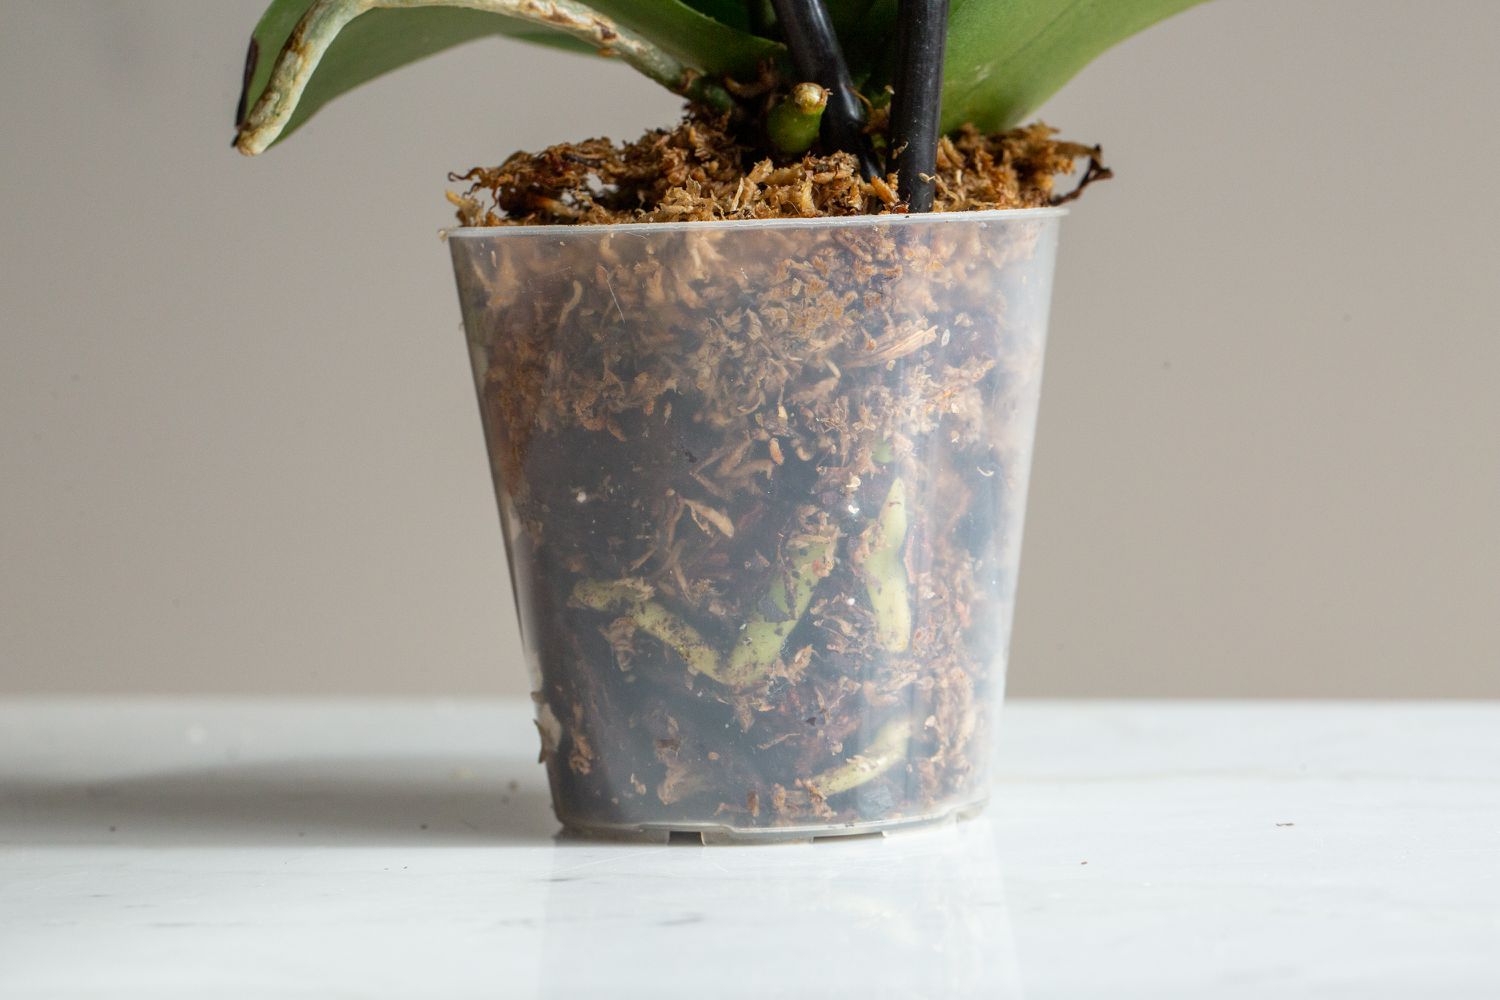 Raízes de orquídeas cercadas de musgo em um recipiente plástico